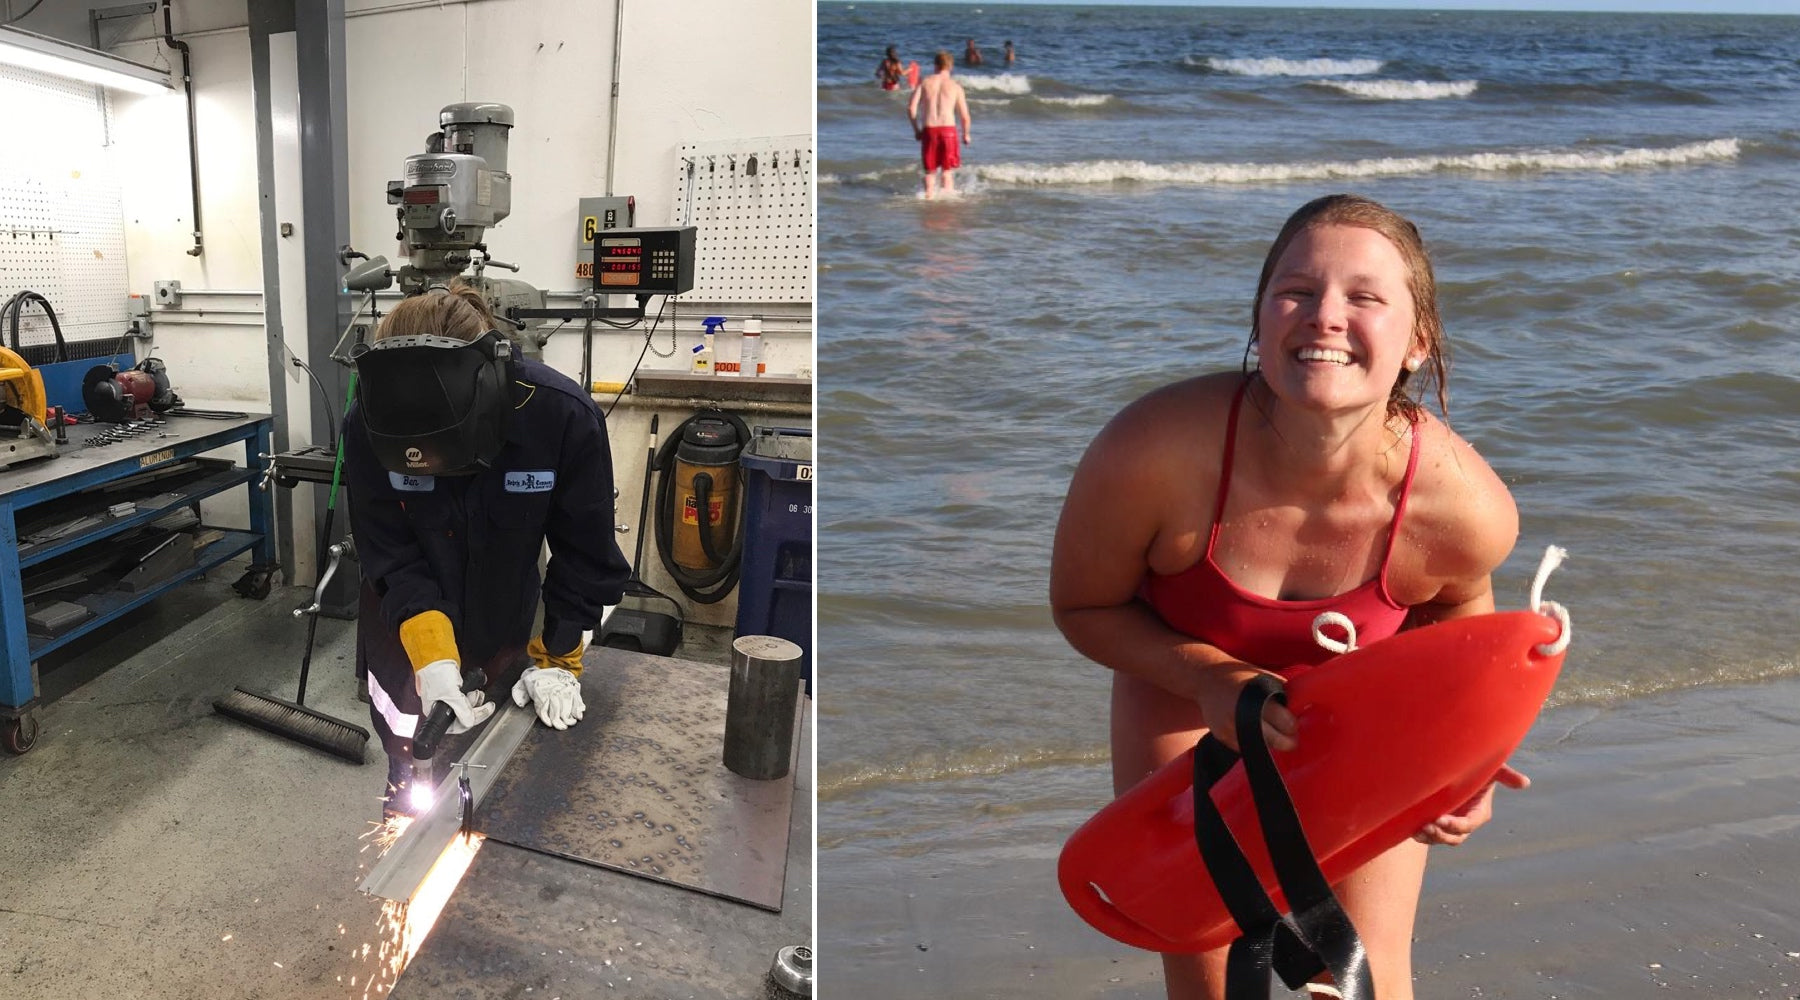 Carrie Schrock engineer and lifeguard photos